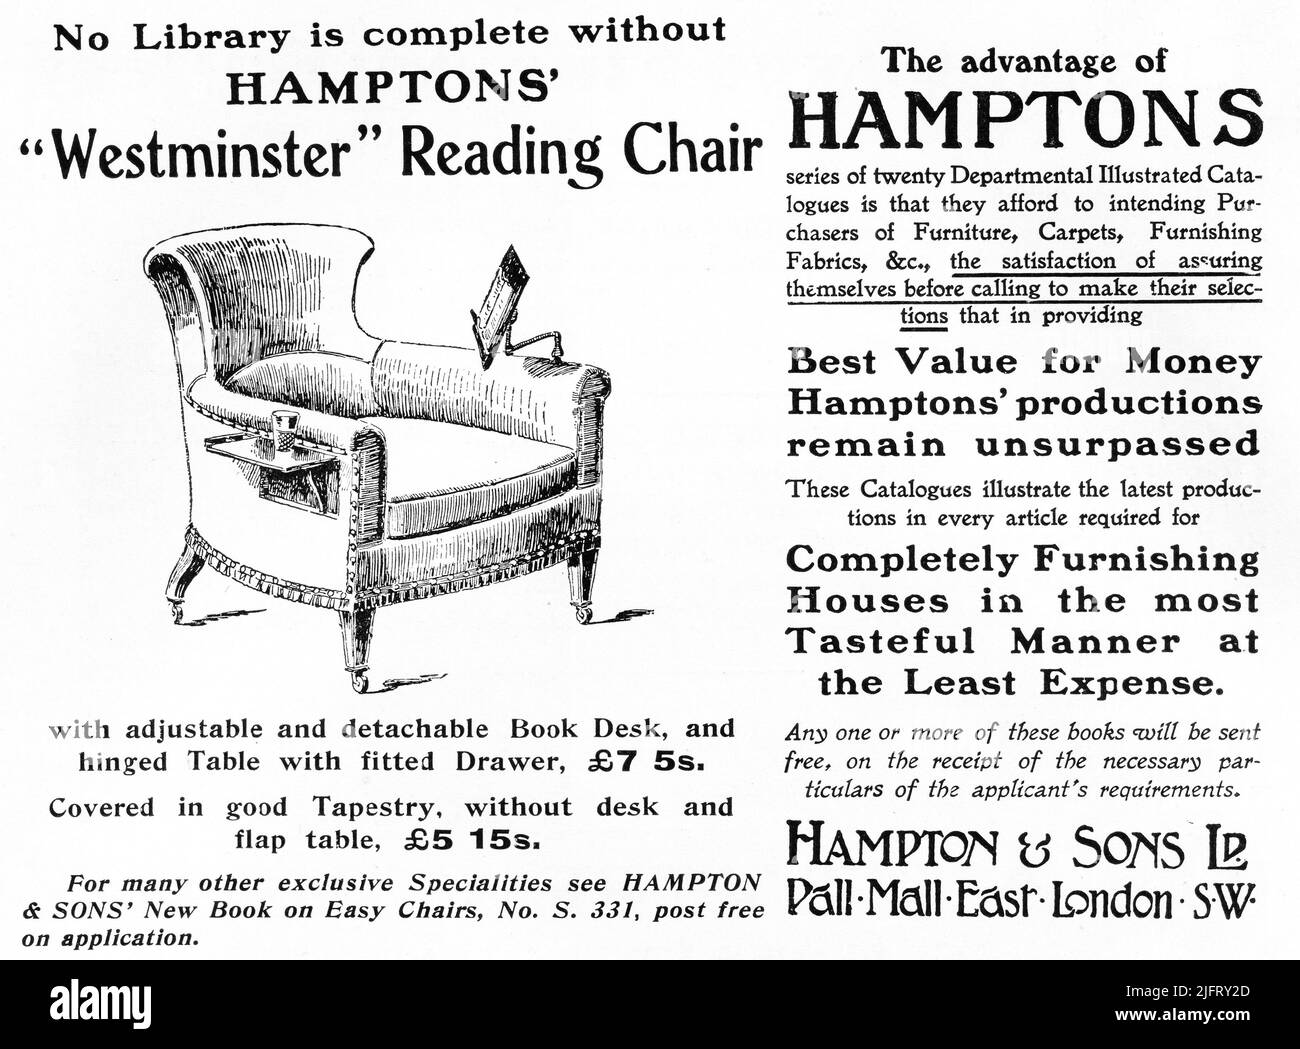 Eine 1903 Anzeige von Hampton & Sons Ltd., Pall Mall East, London. S.W. wirbt für ihren ‘Westminster’ Lesestuhl. „Häuser auf geschmackvollste Weise und mit geringster Kostenaufwand komplett ausstatten“. Stockfoto